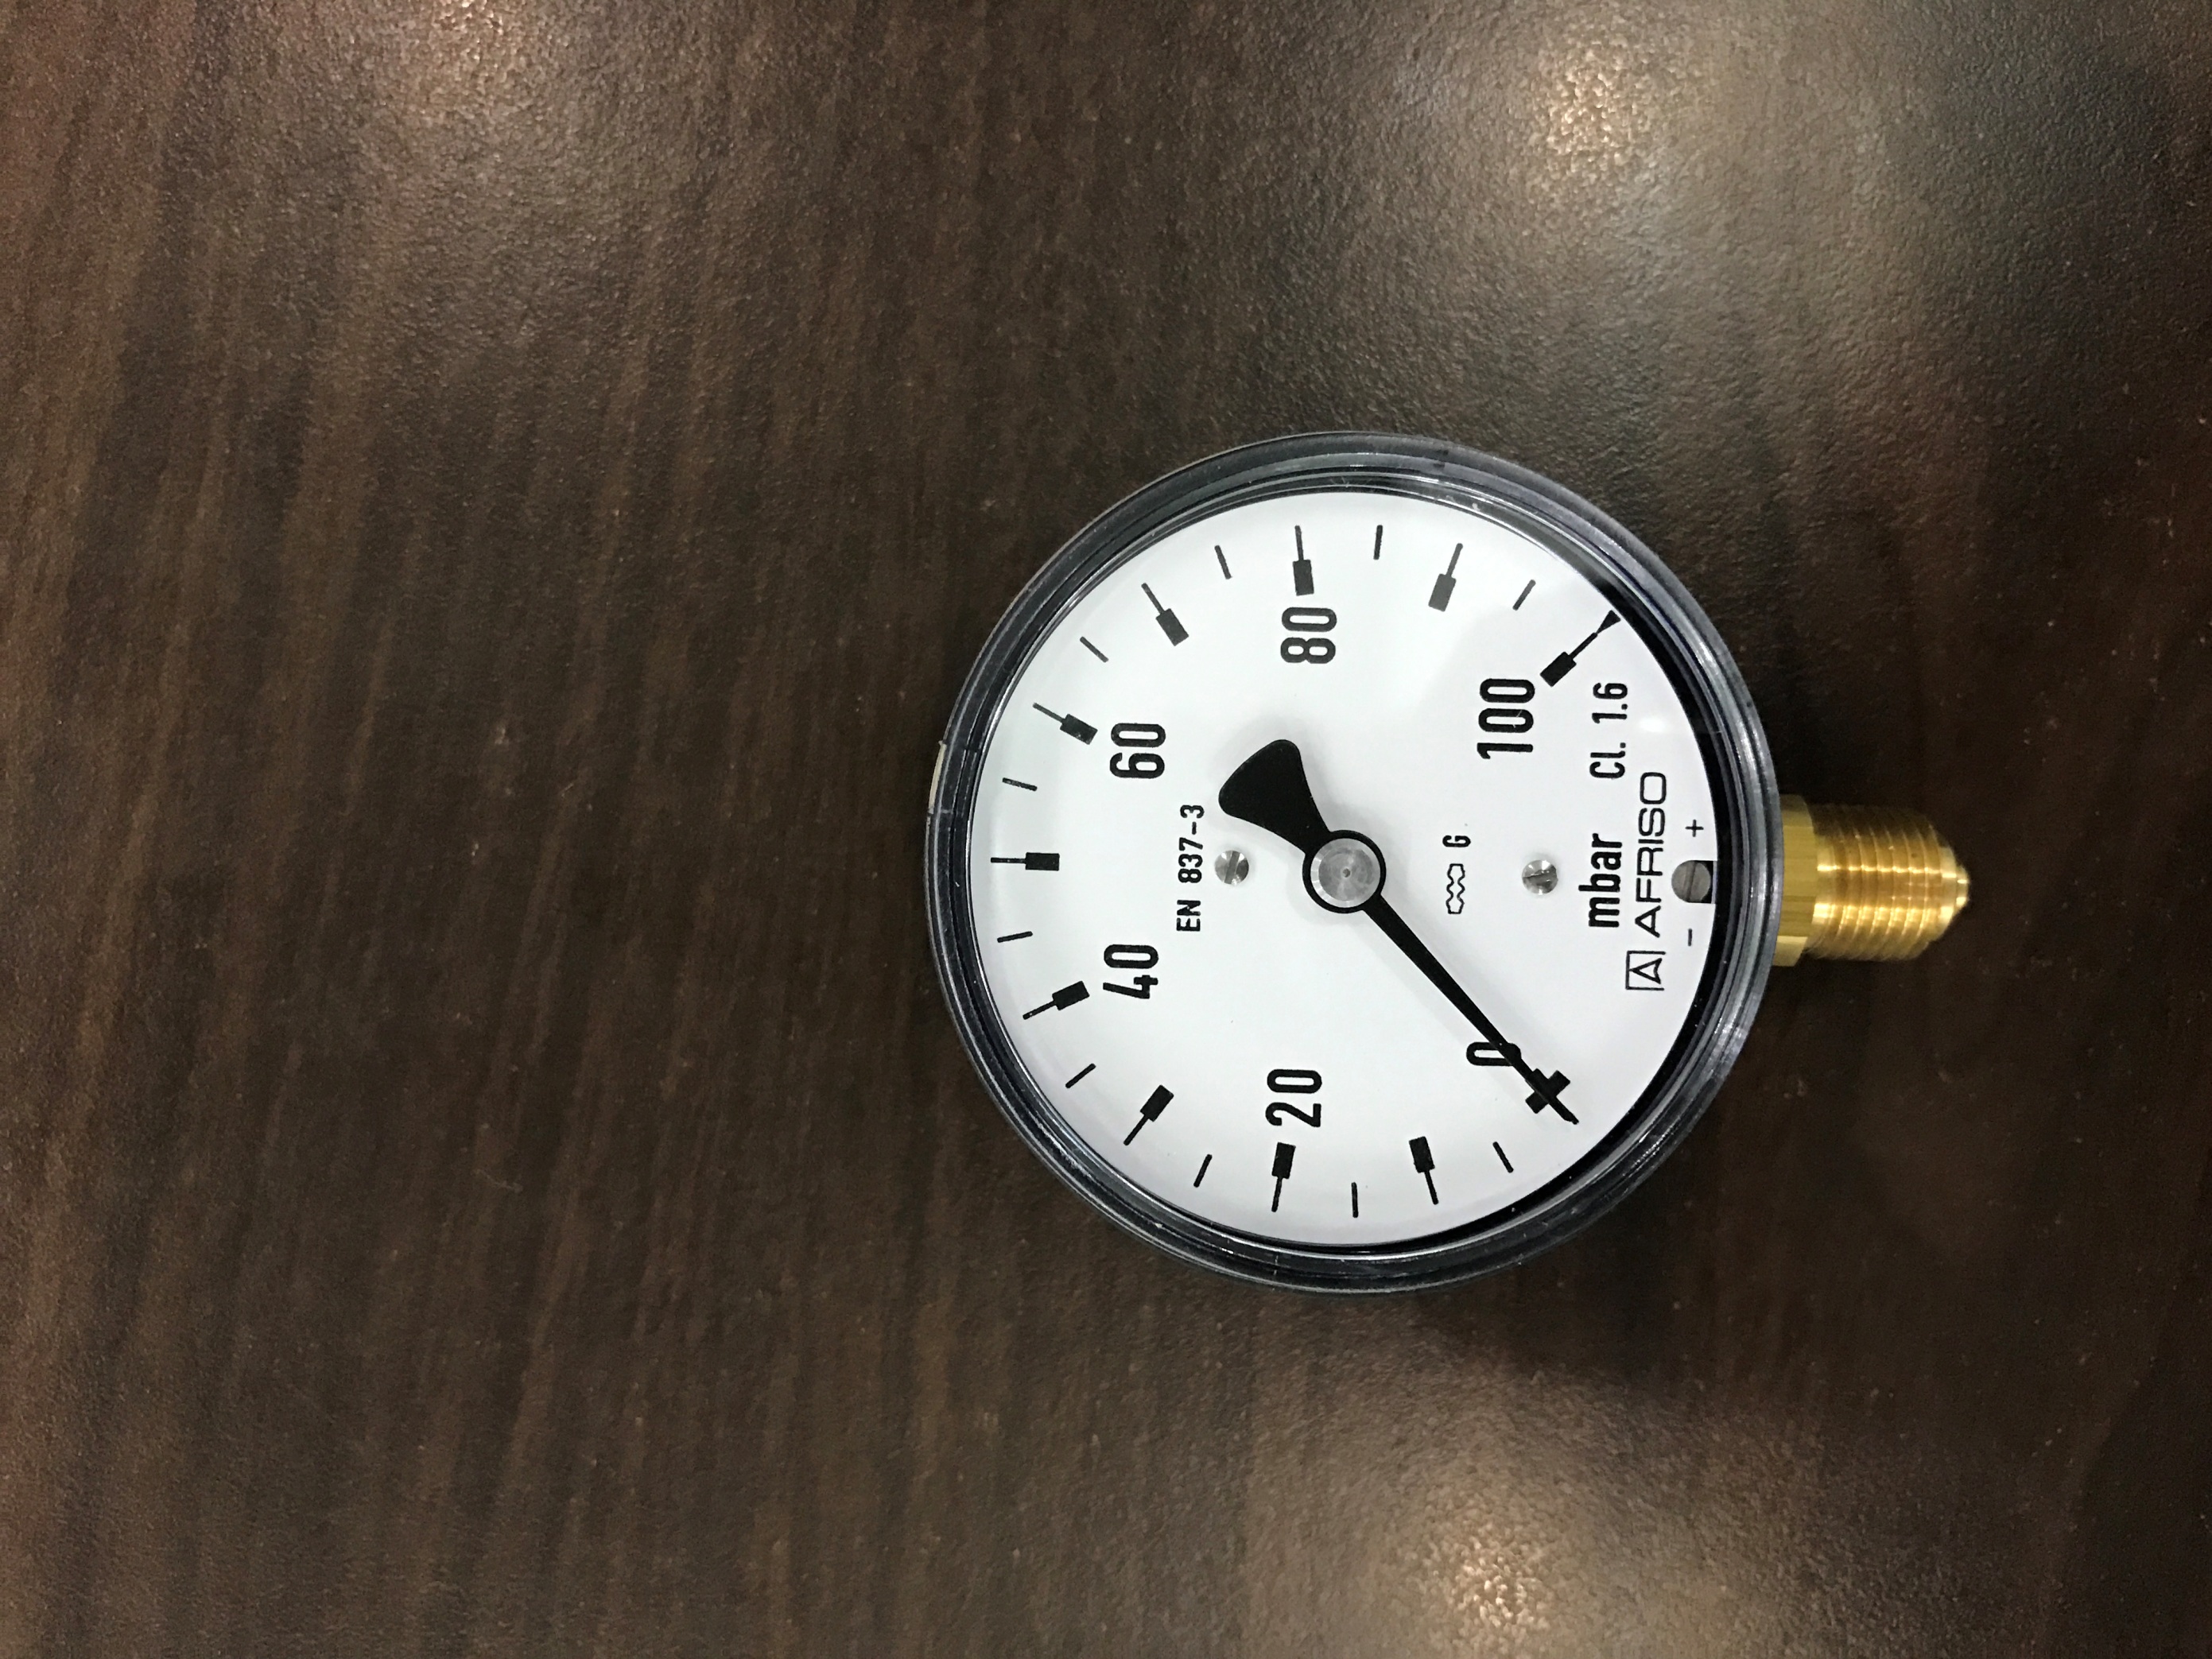 đồng hồ đo áp suât mbar hàng giá rẻ có đầy đủ kích thước và áp suất